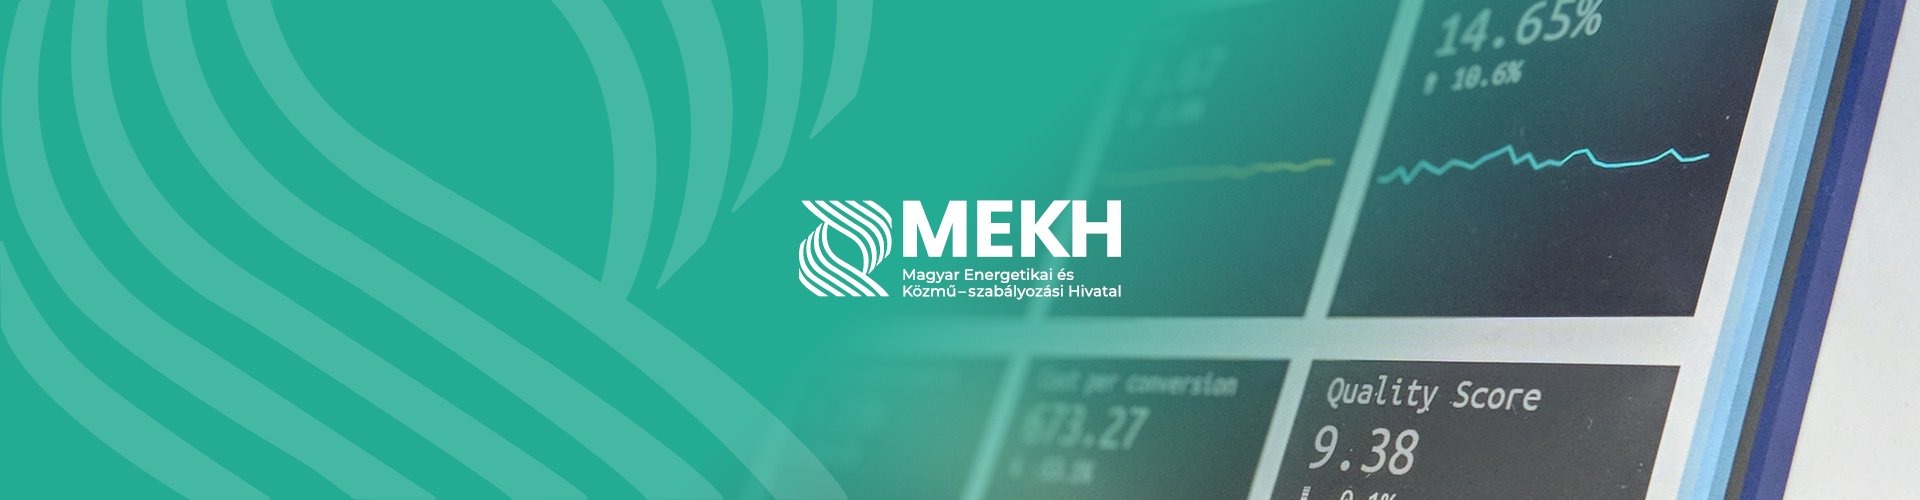 MEKH - rendelet az almérők alkalmazásról 